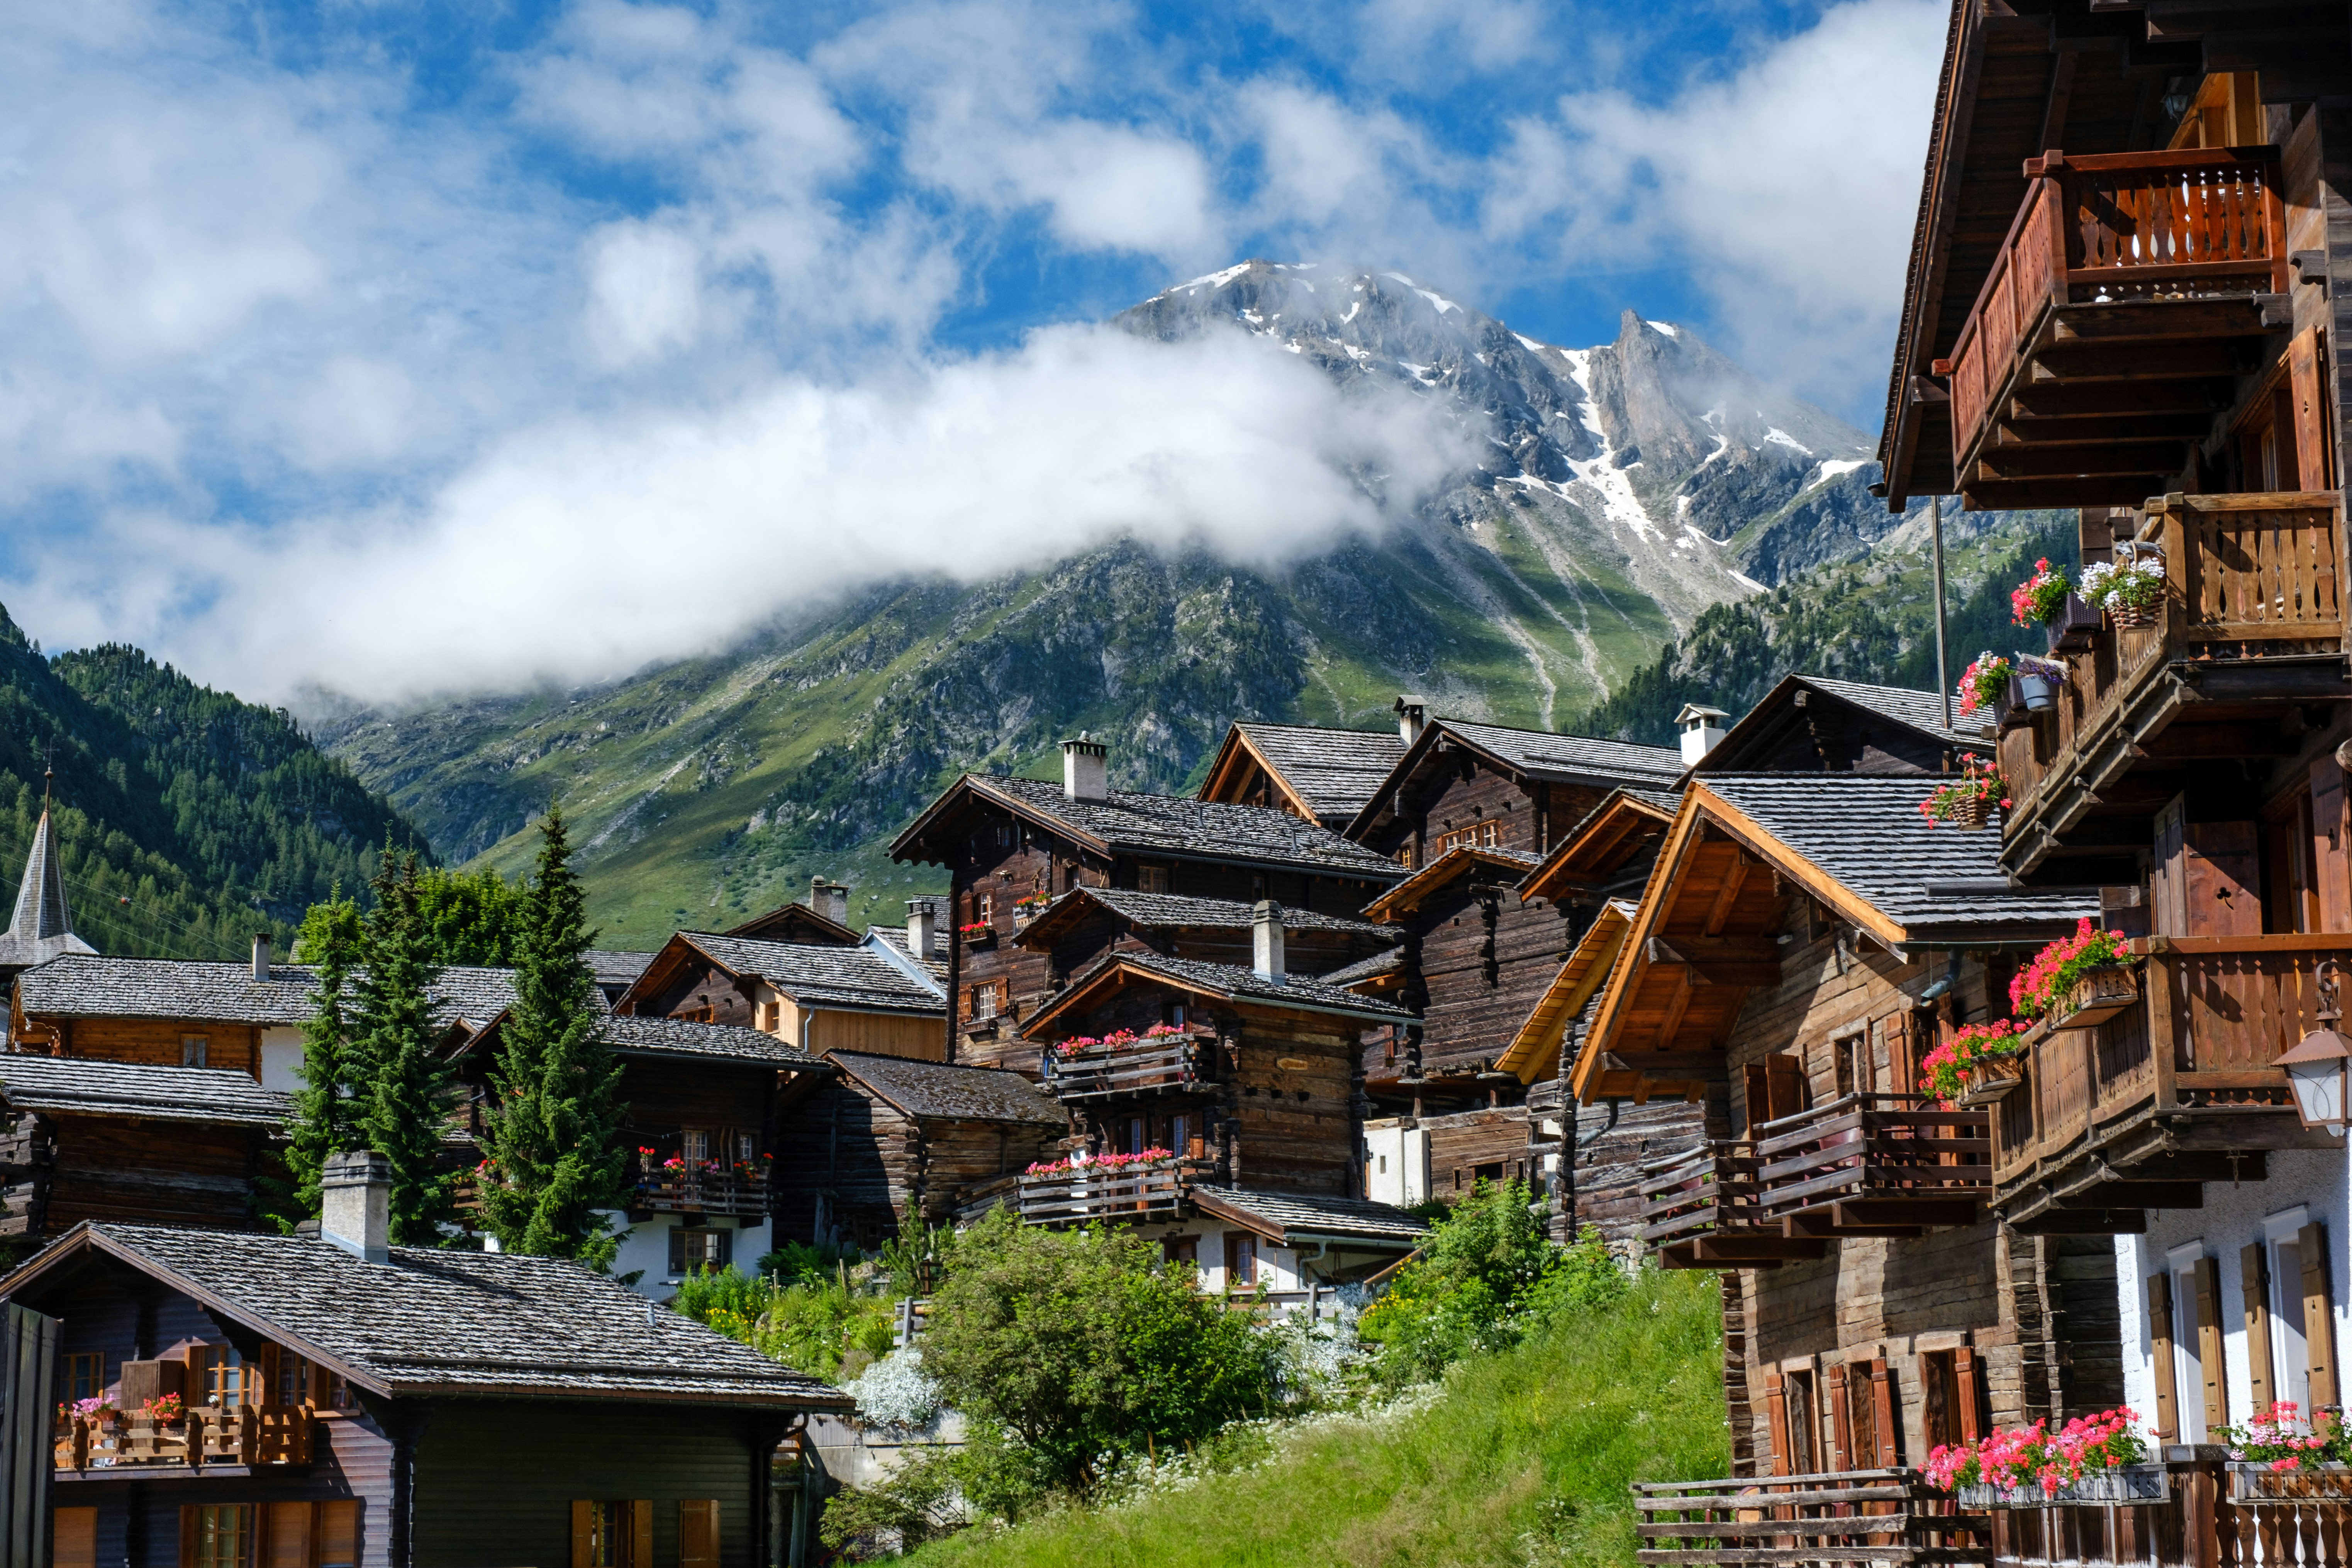 Majestic peaks of Swiss Alps in Switzerland